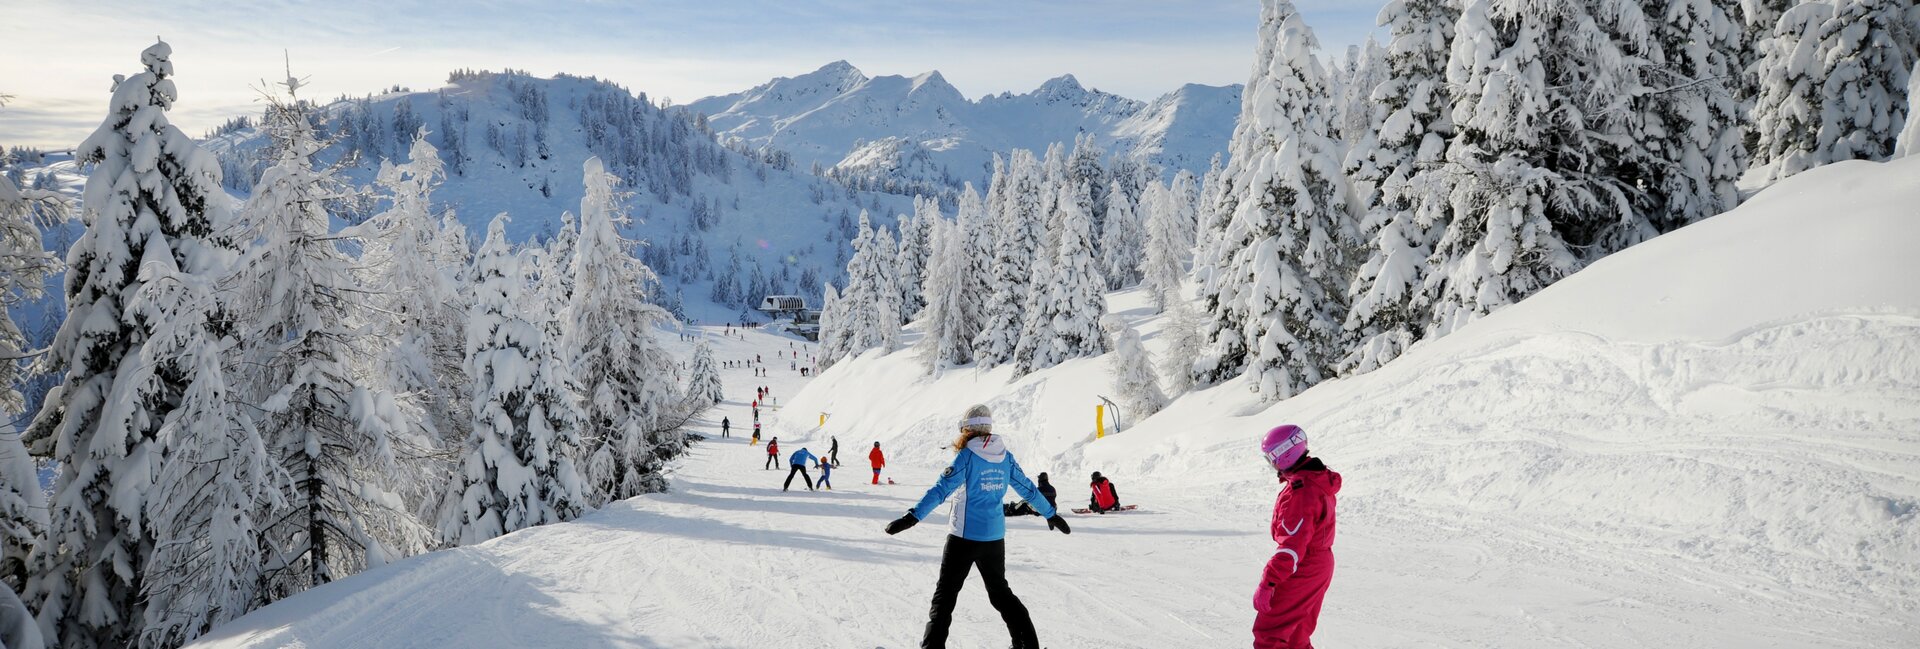 Мале - Валь-ди-Соле - прекрасные района катания на лыжах